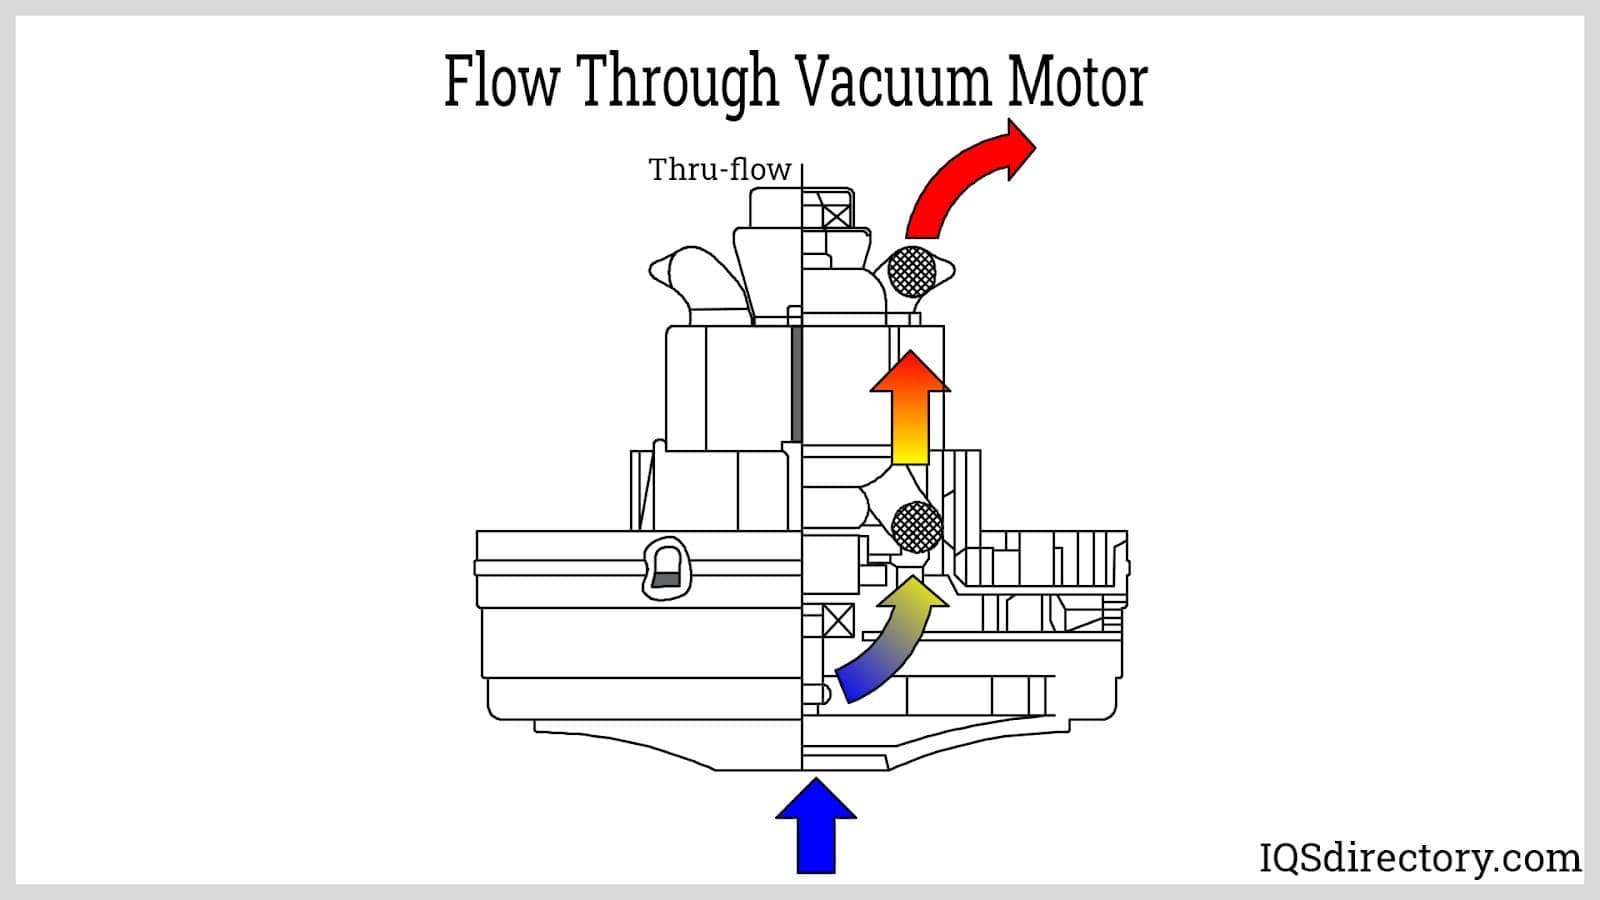 Flow Through Vacuum Motor